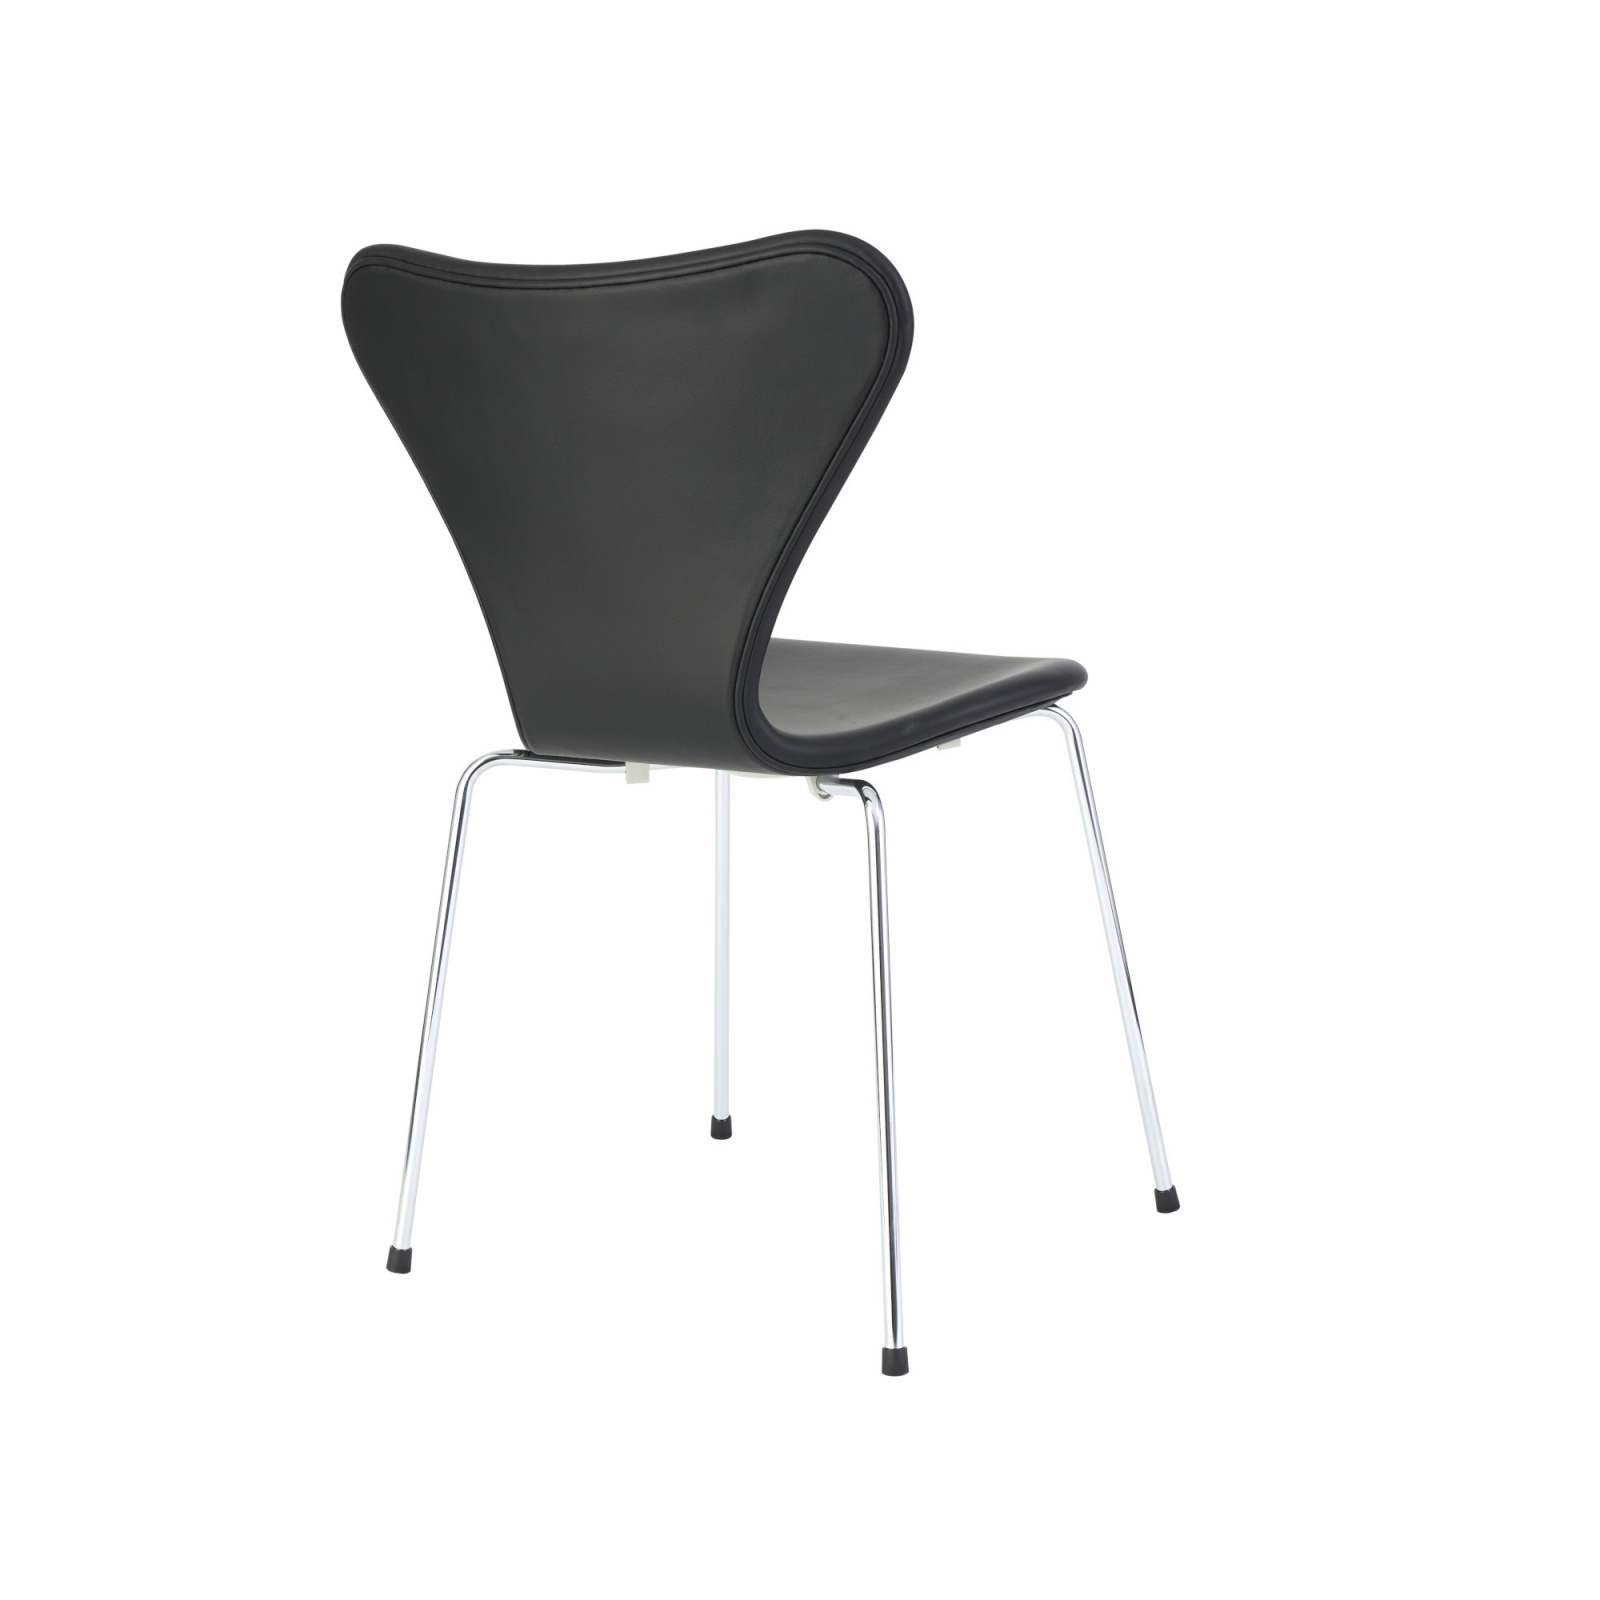 7 er stol - læder "elegance" - Arne Jacobsen UpNordic